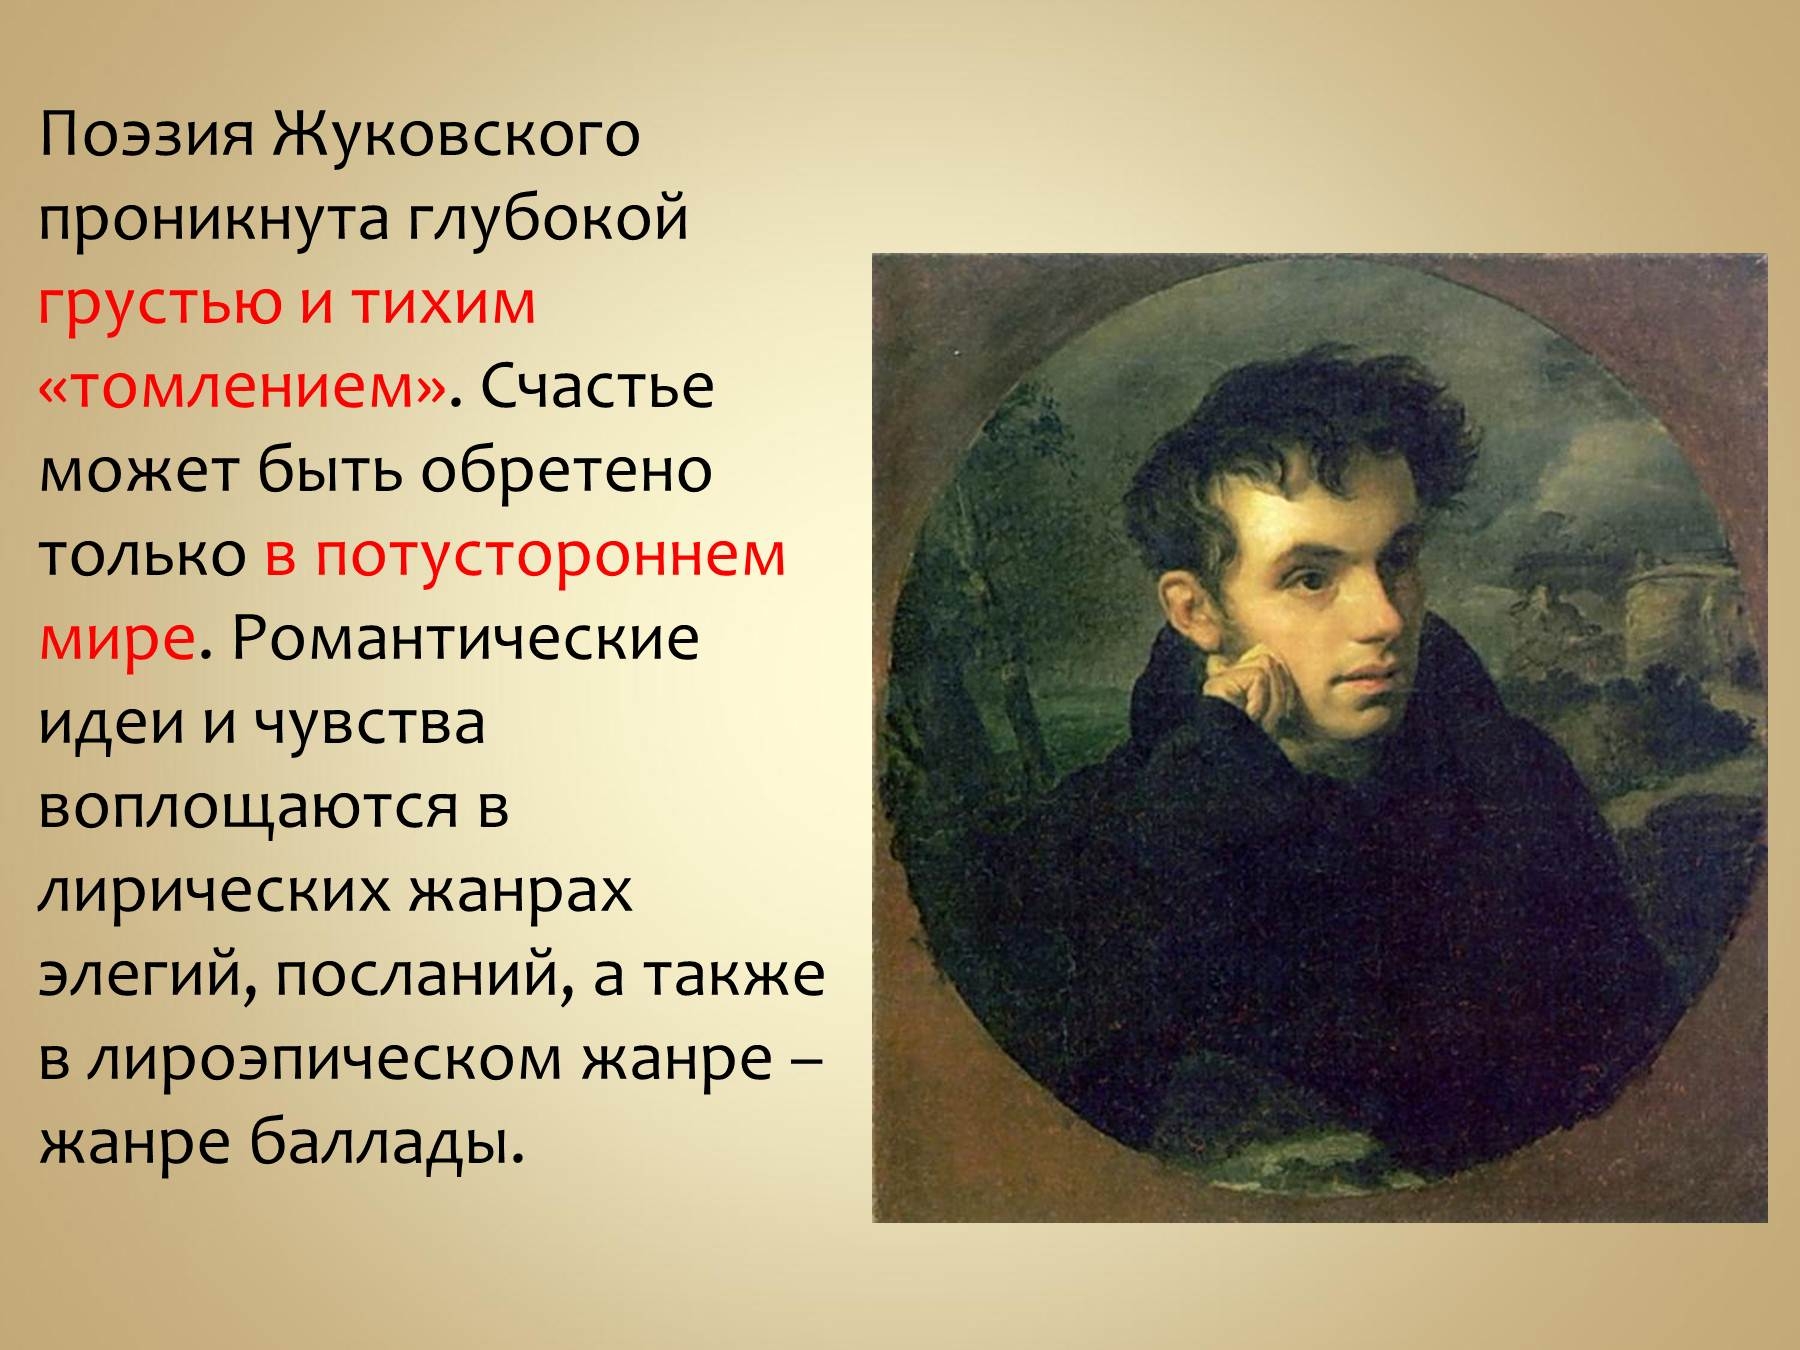 Чувственное произведение. Жуковский поэт 19 века. Жизнь и творчество Жуковского.